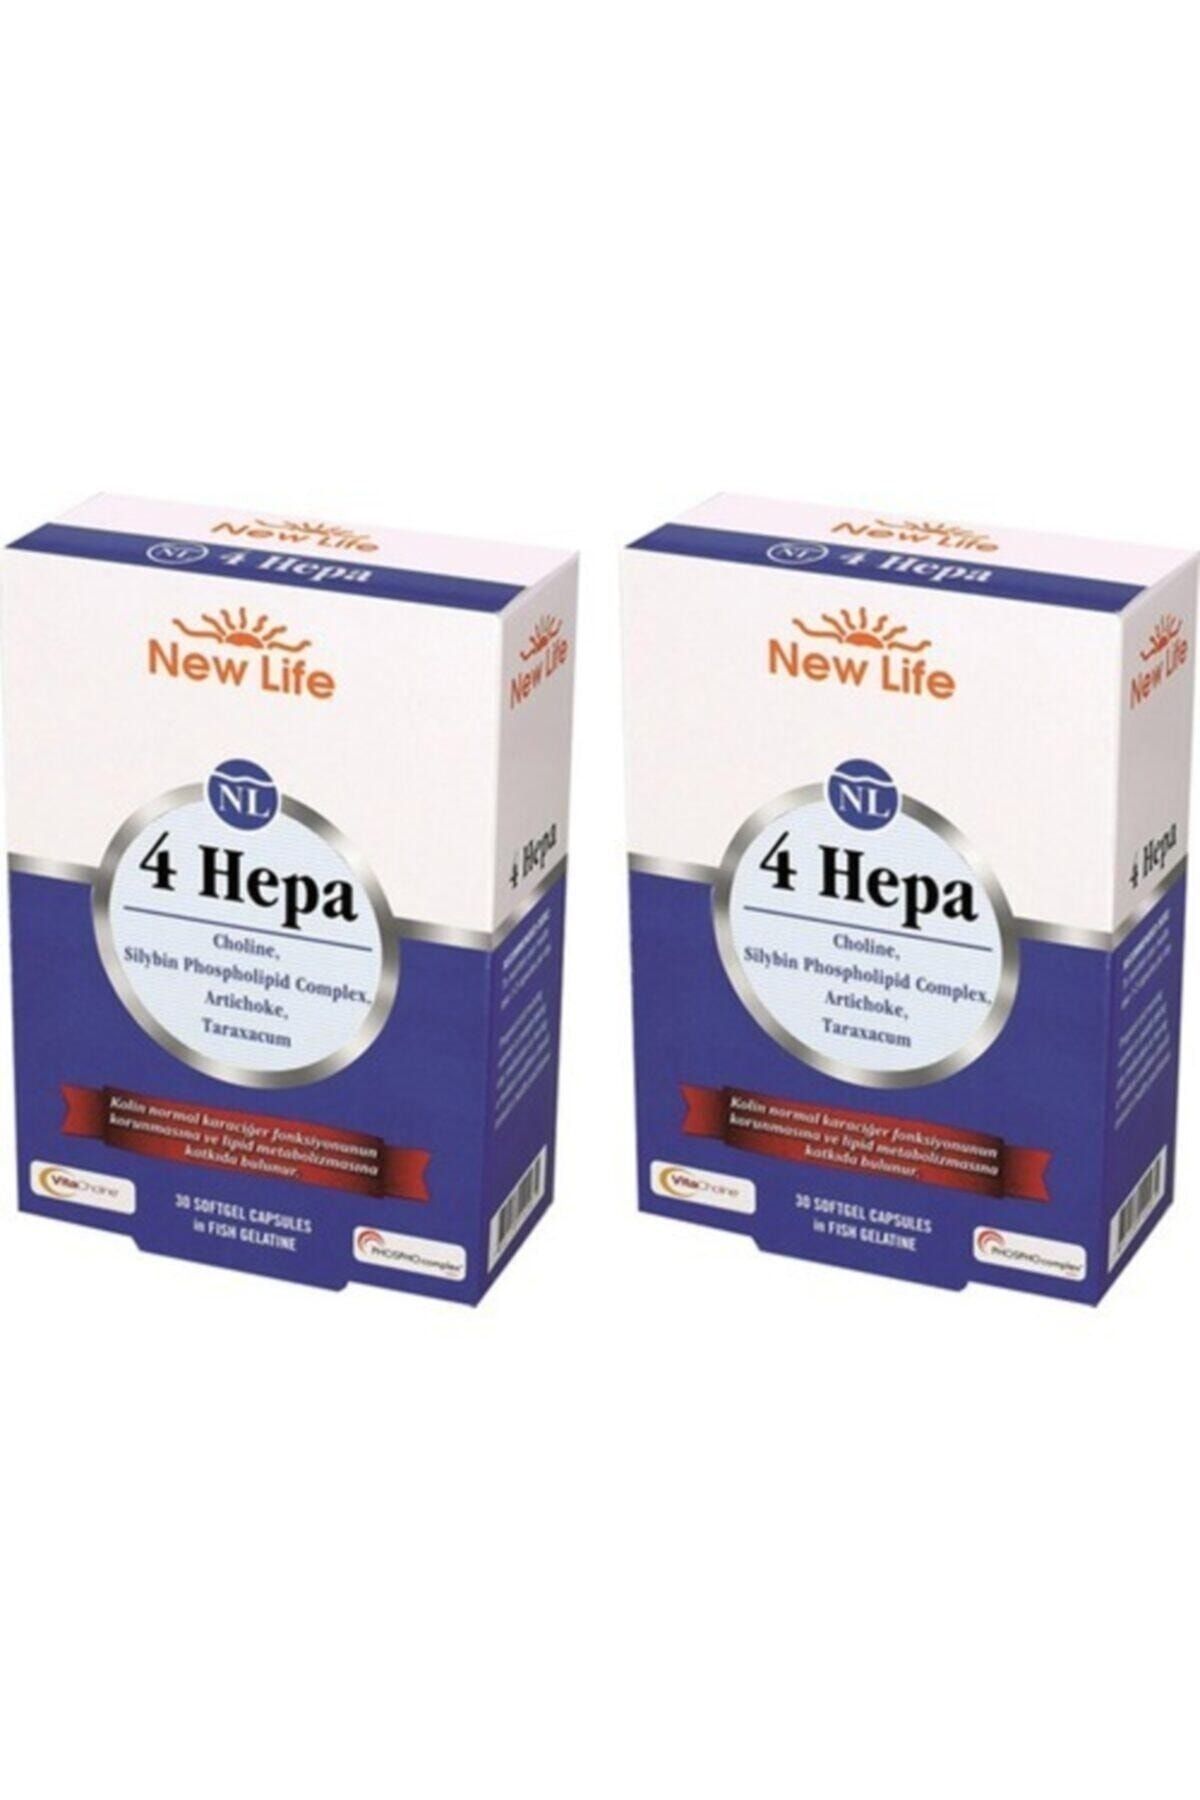 Неру лайф. New Life 4 HEPA инструкция. 4 HEPA New Life инструкция на русском.